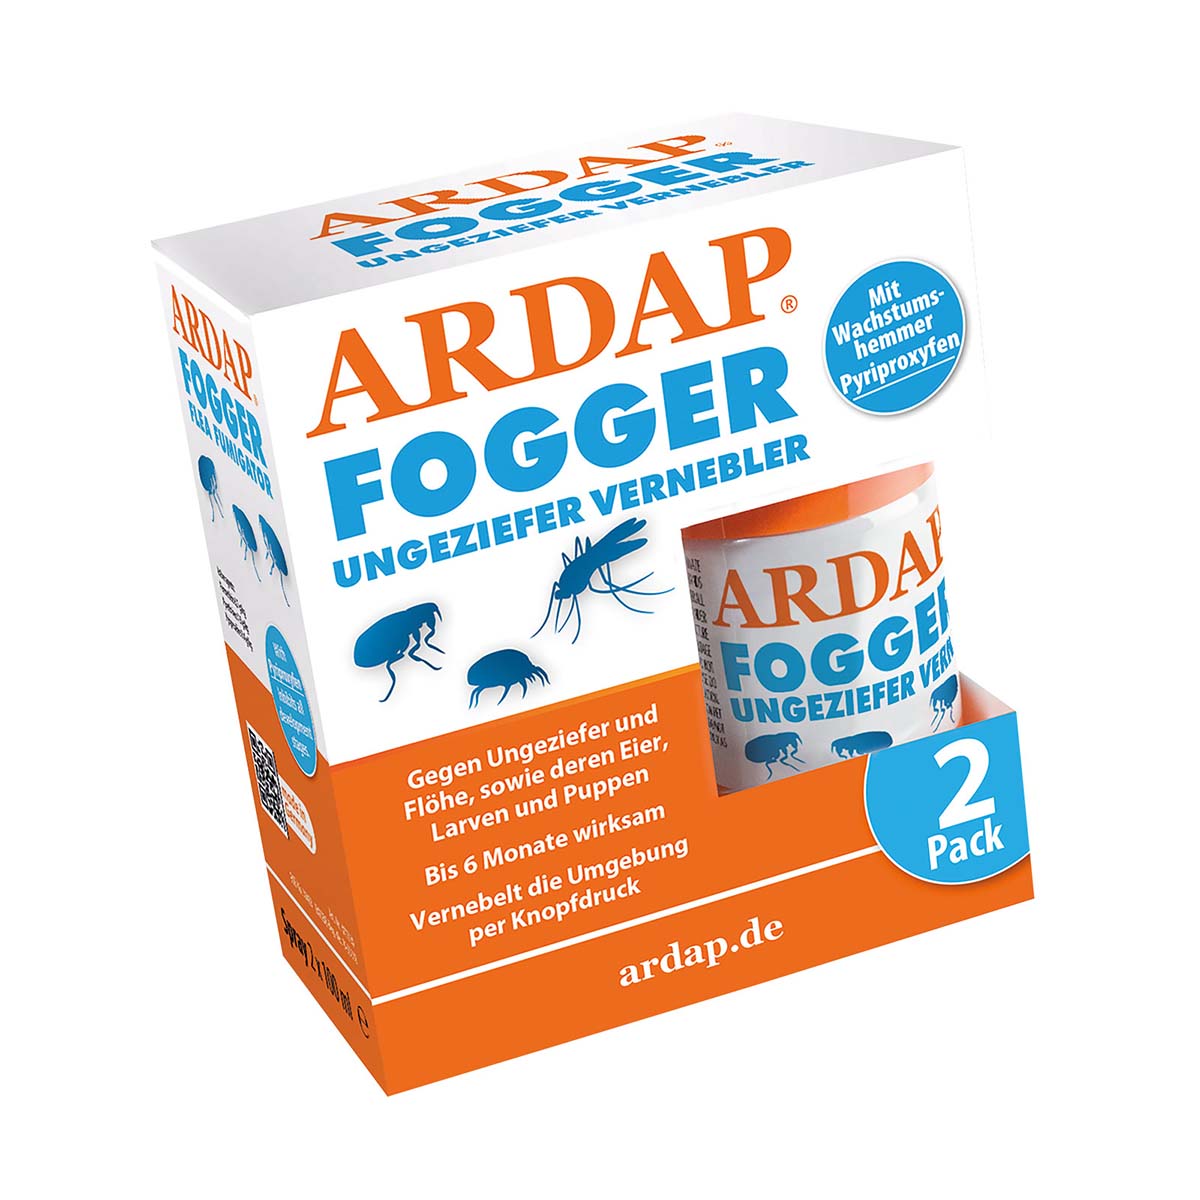 ARDAP Fogger - Ungeziefervernebler 6x100ml von ardap